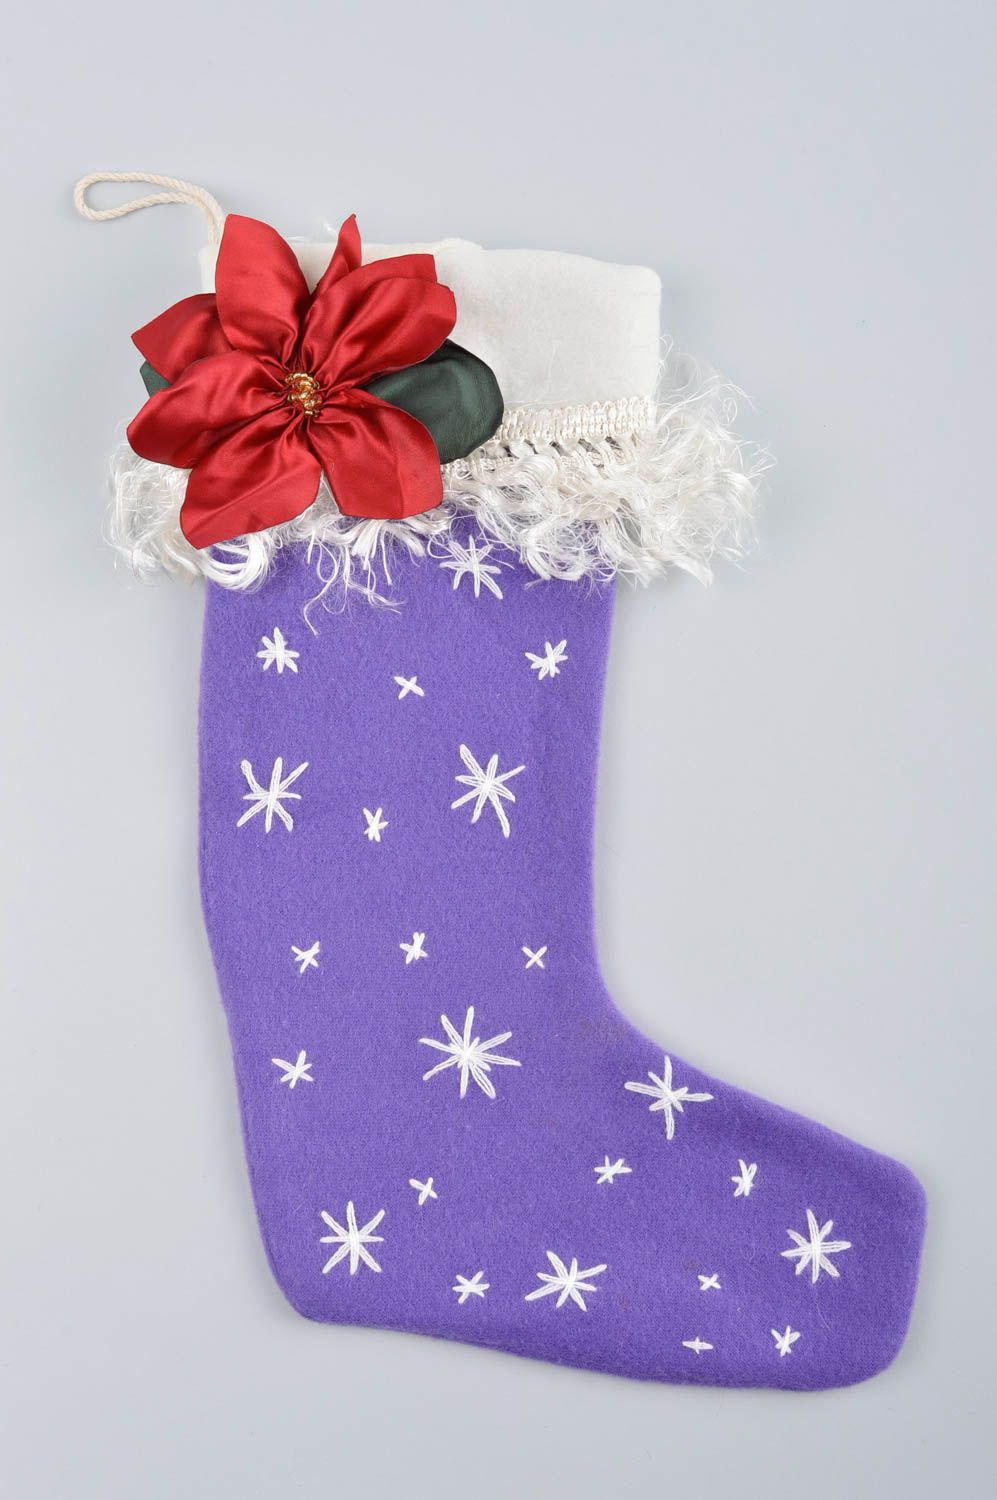 Handmade Christmas stockings Xmas stockings handmade decorations souvenir ideas photo 3